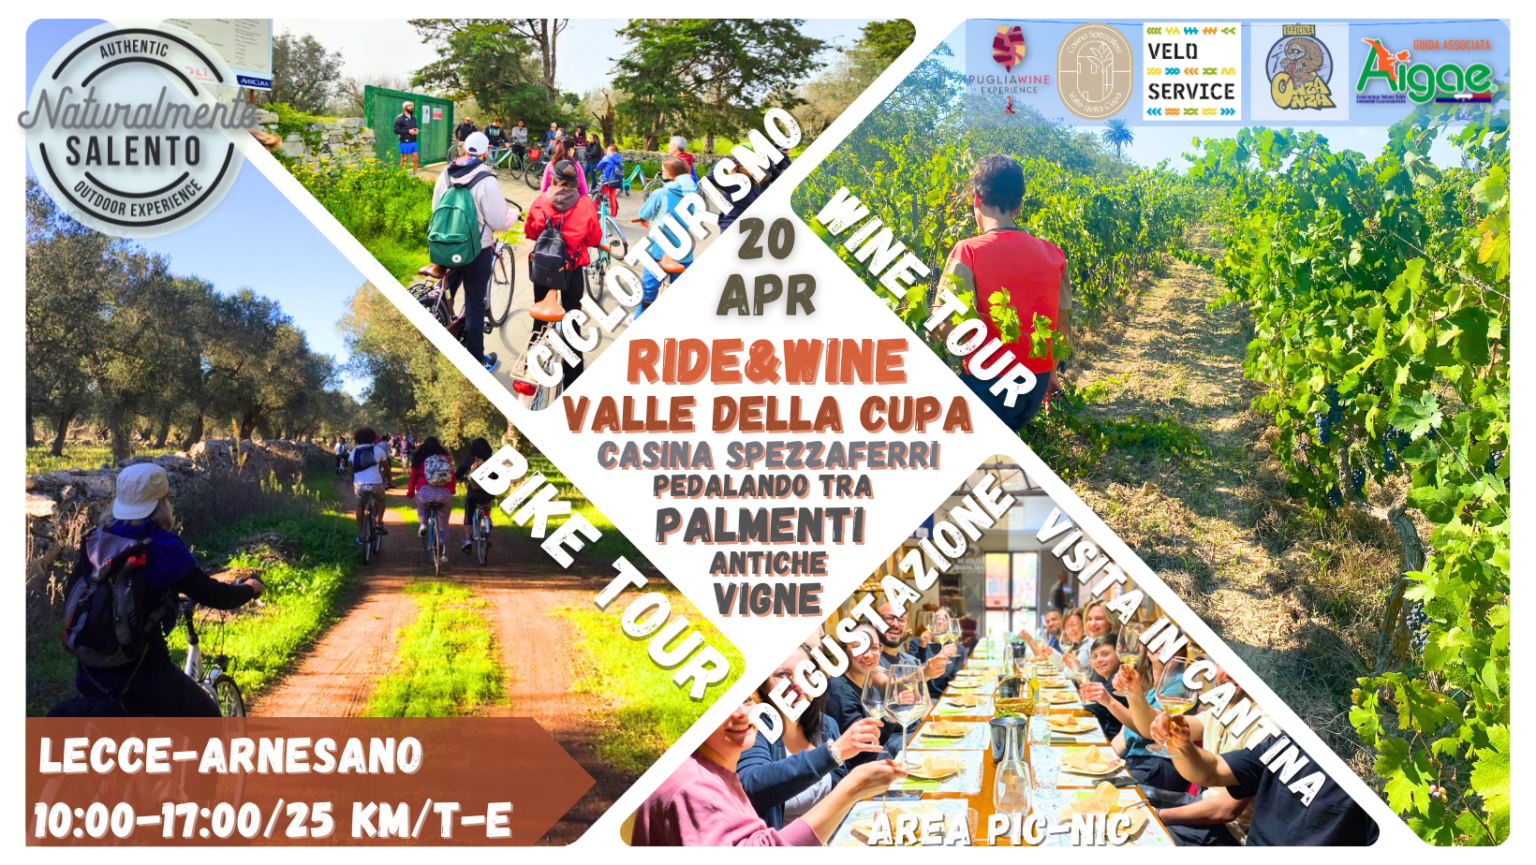 Ride & Wine Valle della Cupa (2)